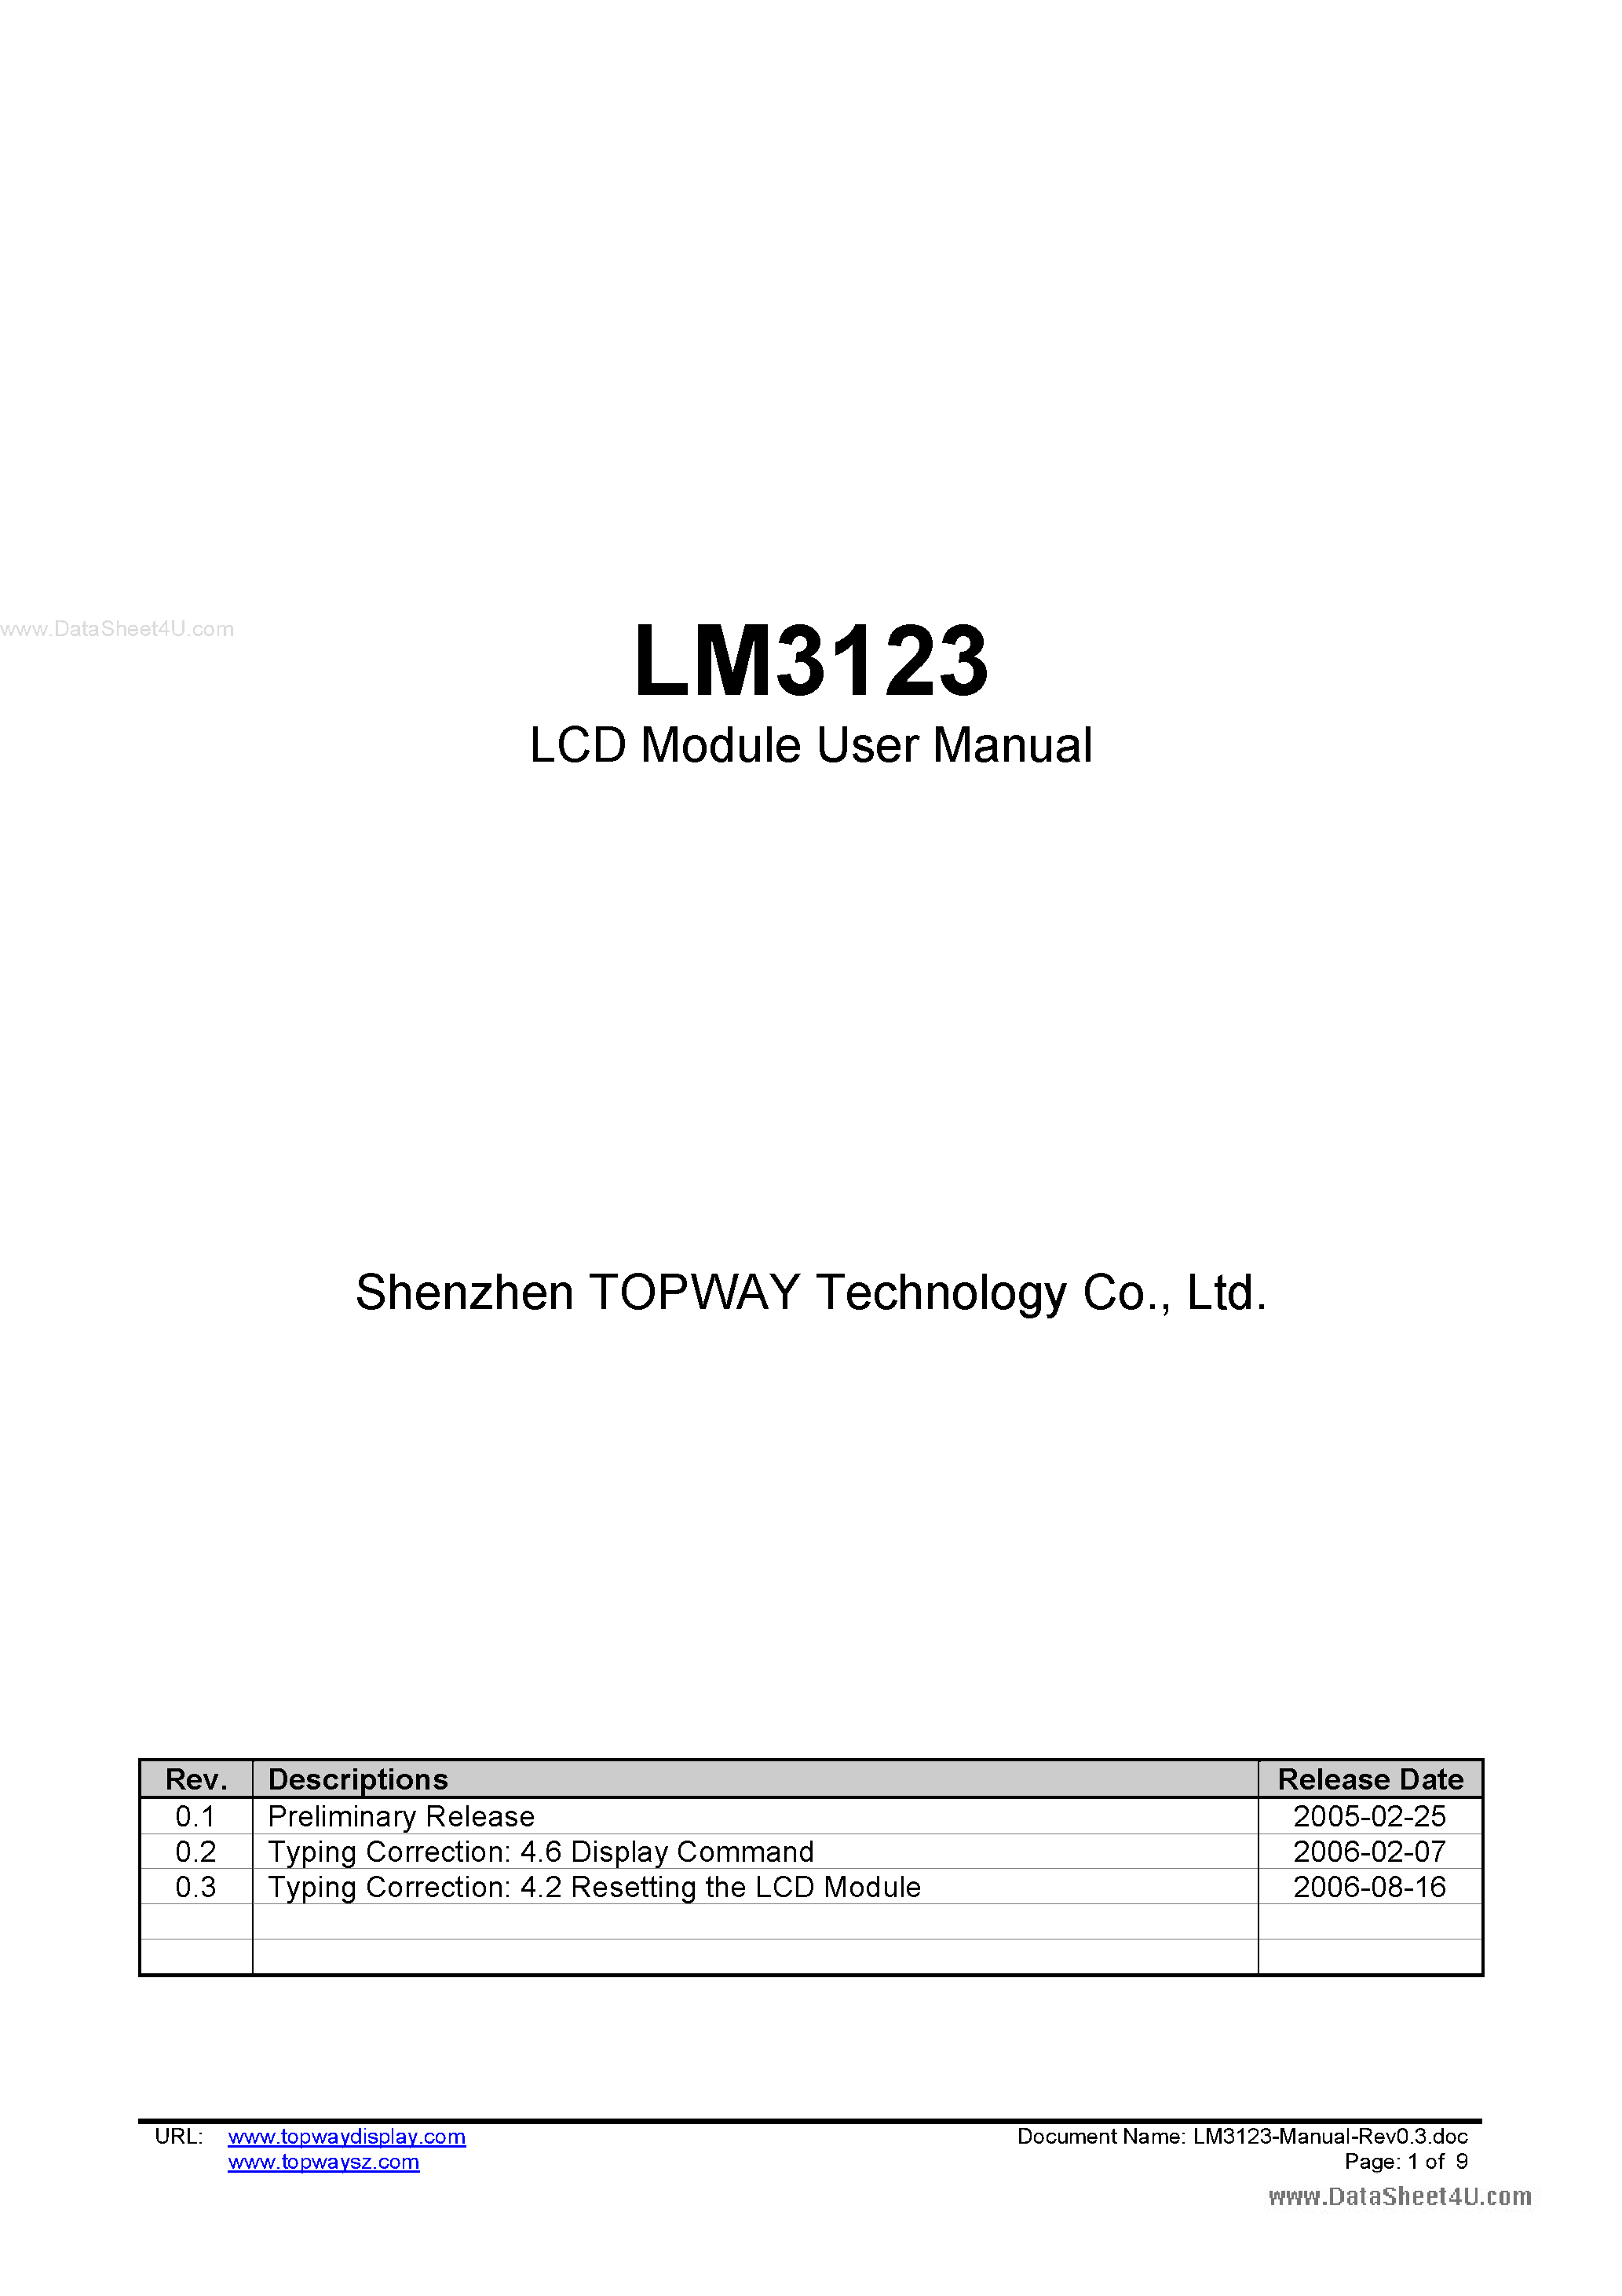 Даташит LM3123 - LCD Module страница 1